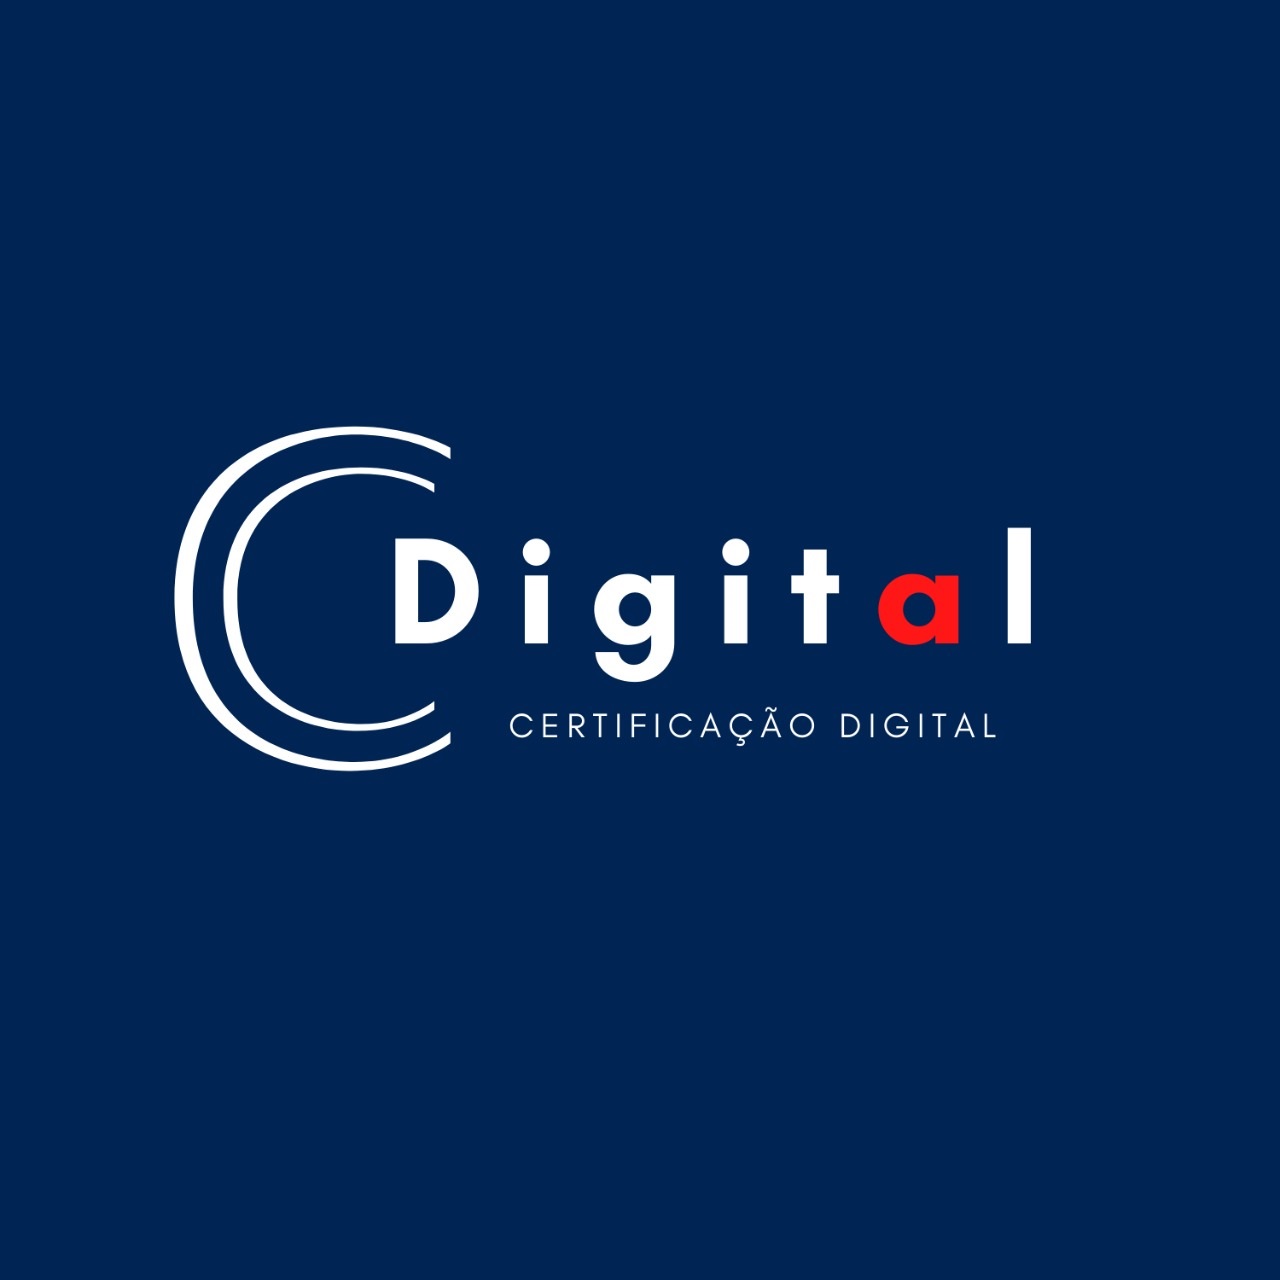 Logotipo do parceiro AR Cdigital &#8211; Ponta Grossa